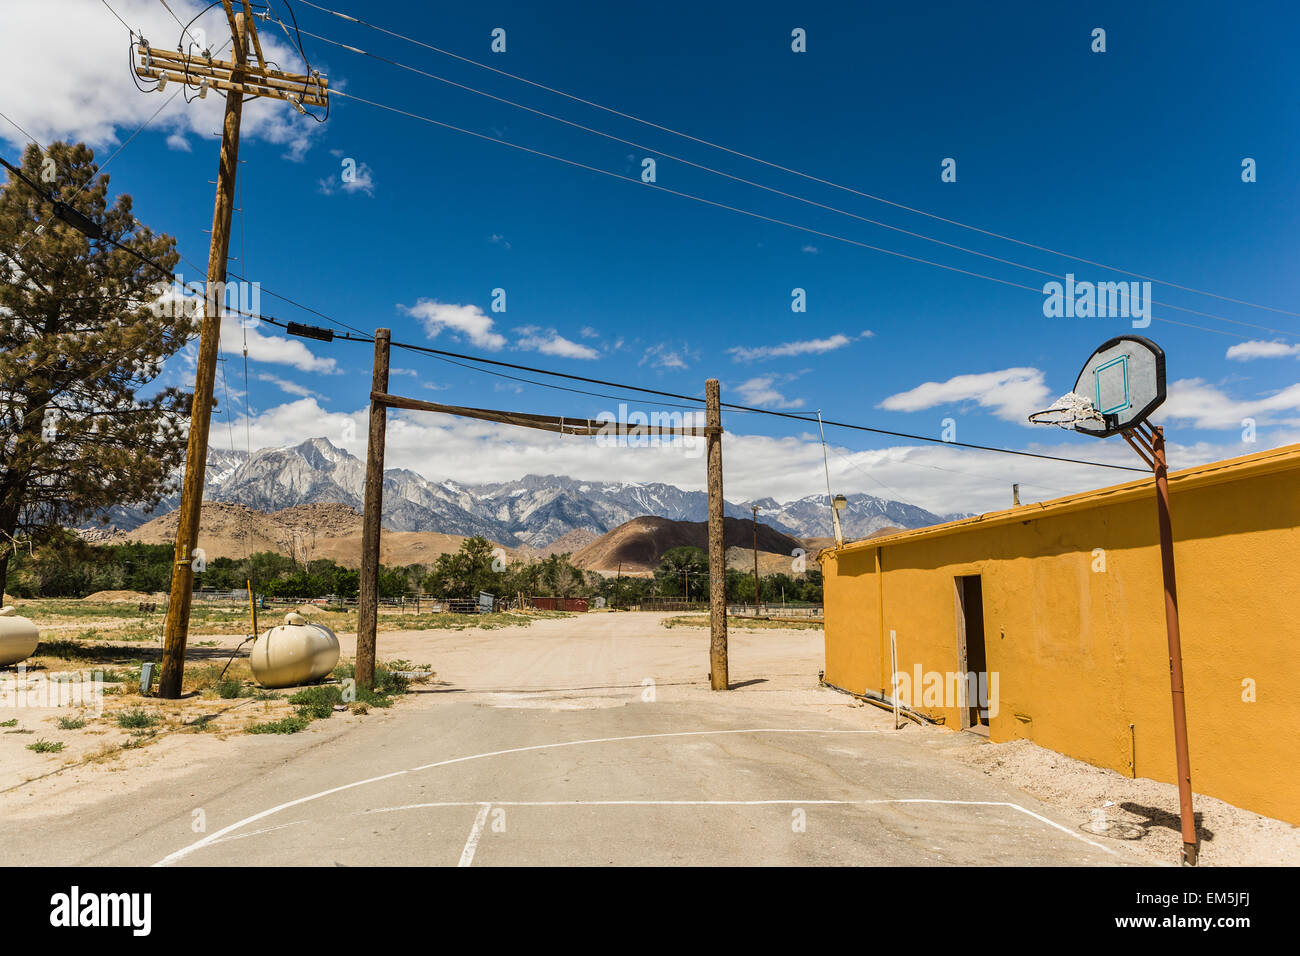 La parte oriental de Sierra Nevada desde una cancha de baloncesto Foto de stock